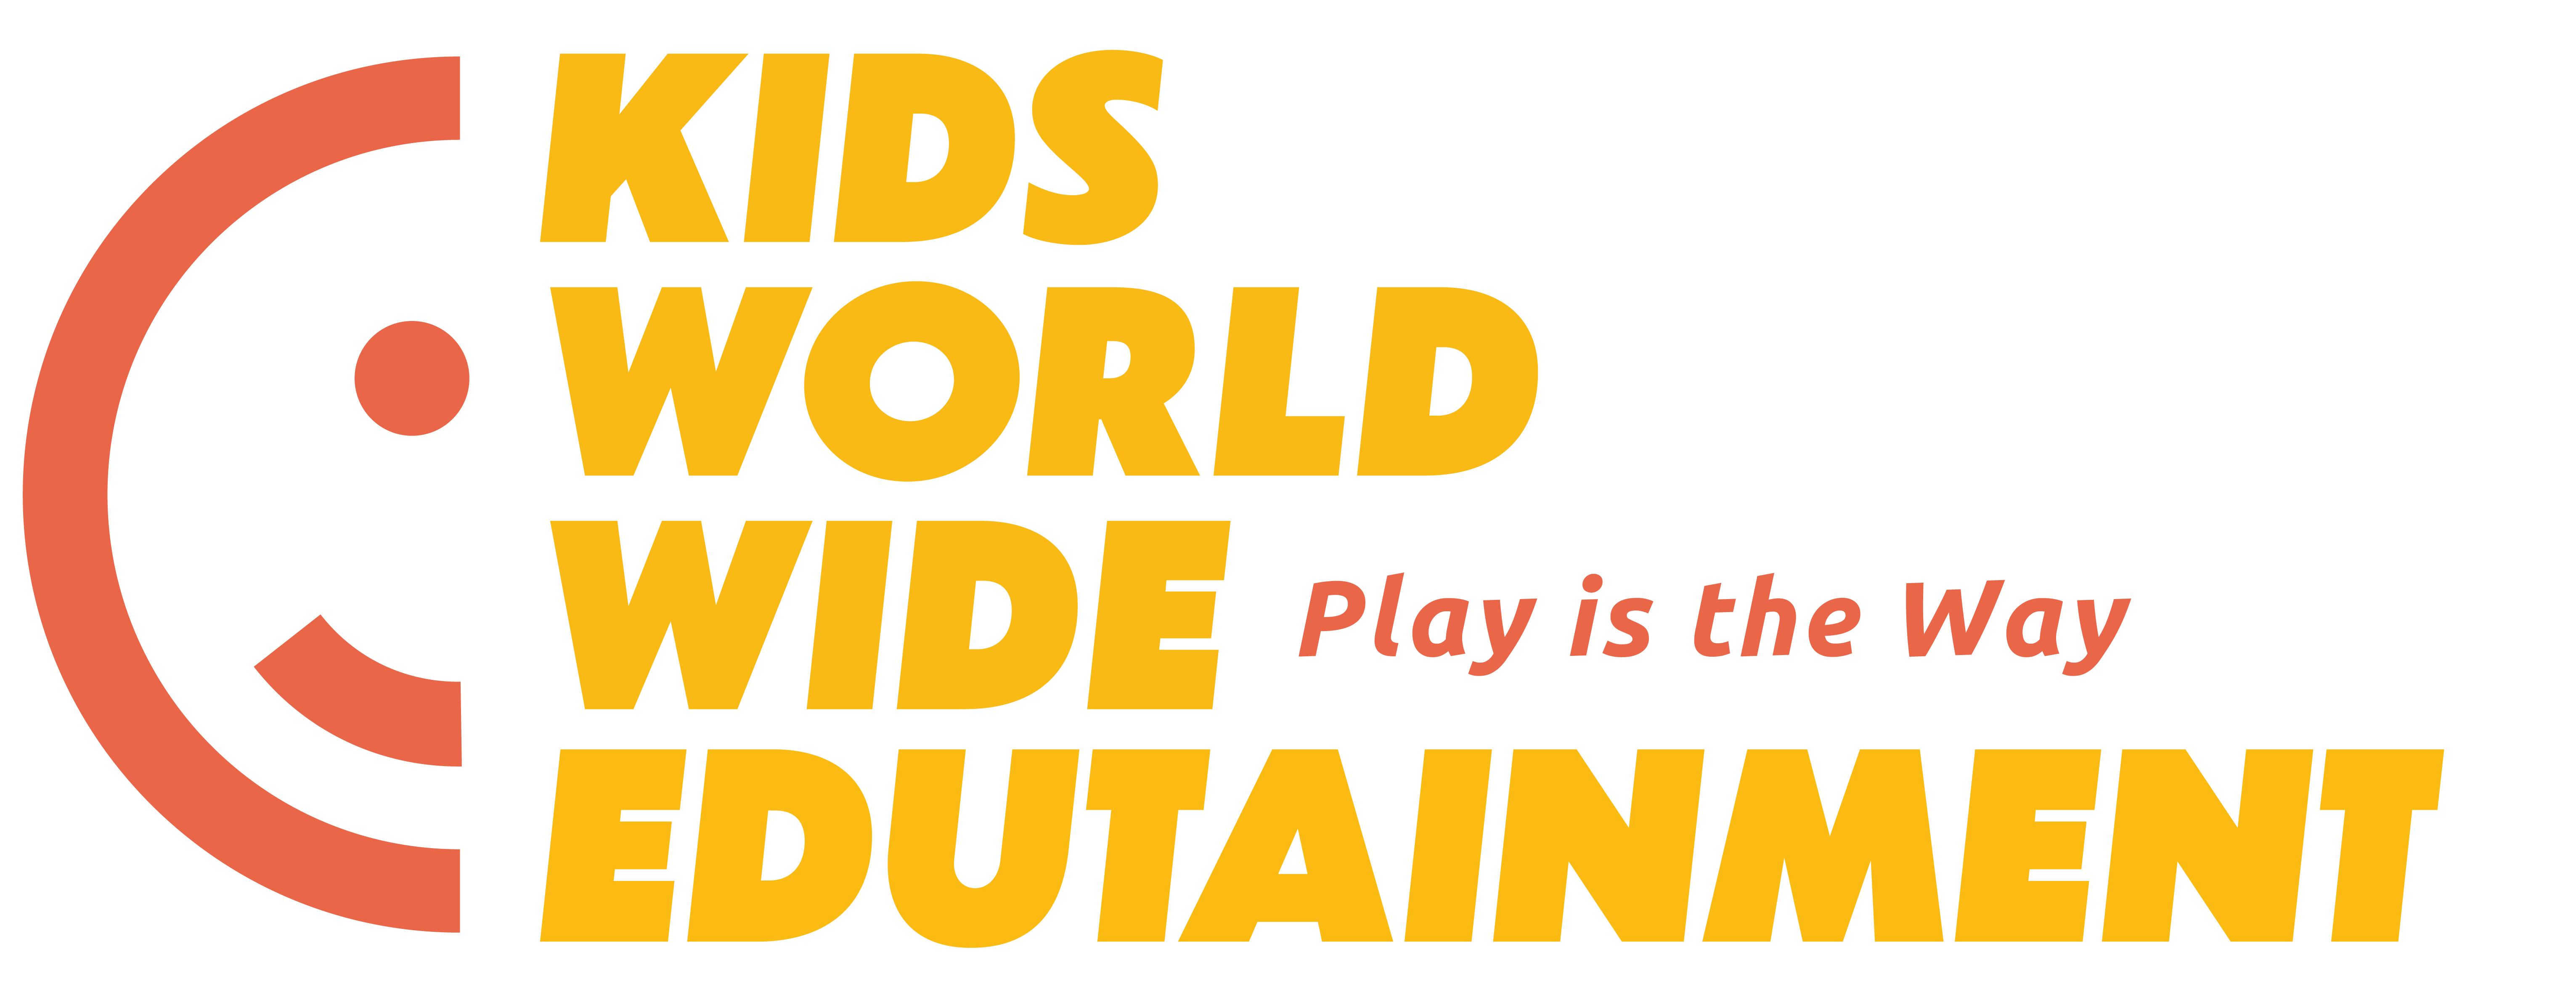 Kids Worldwide Edutainment logo